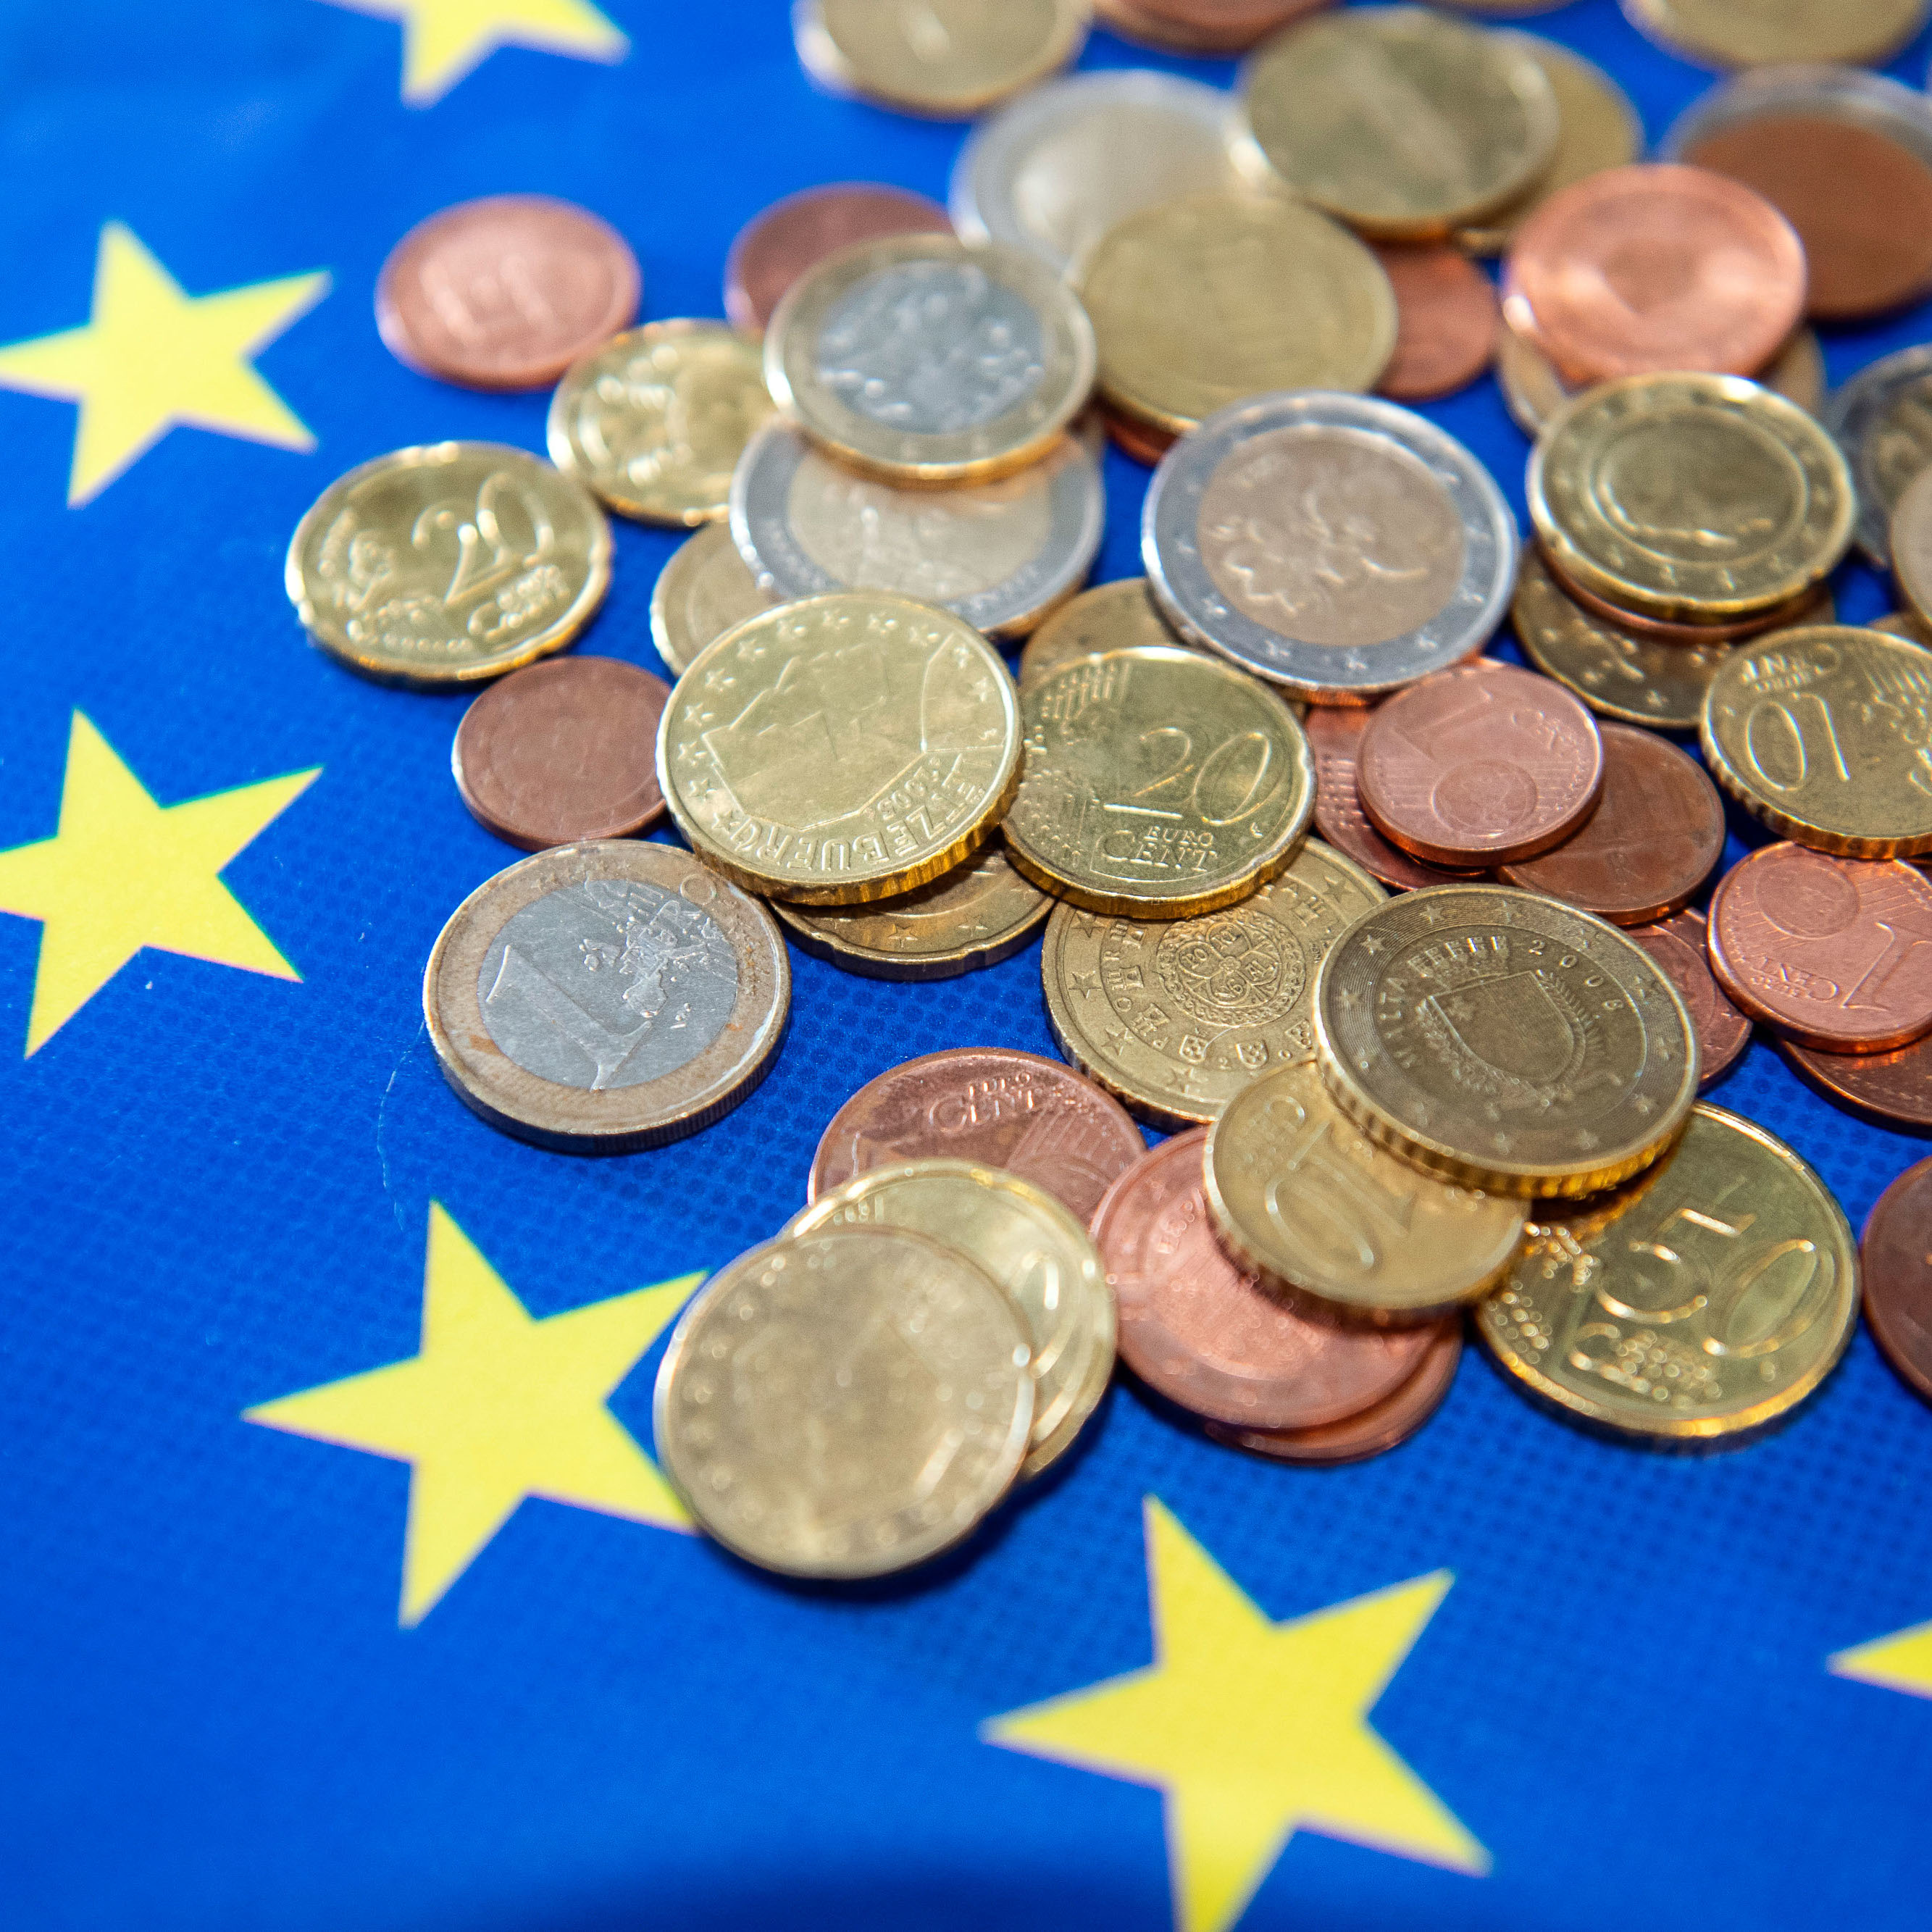 Detailansicht unterschiedlicher Euromünzen auf blauem Untergrund mit gelben Sternen